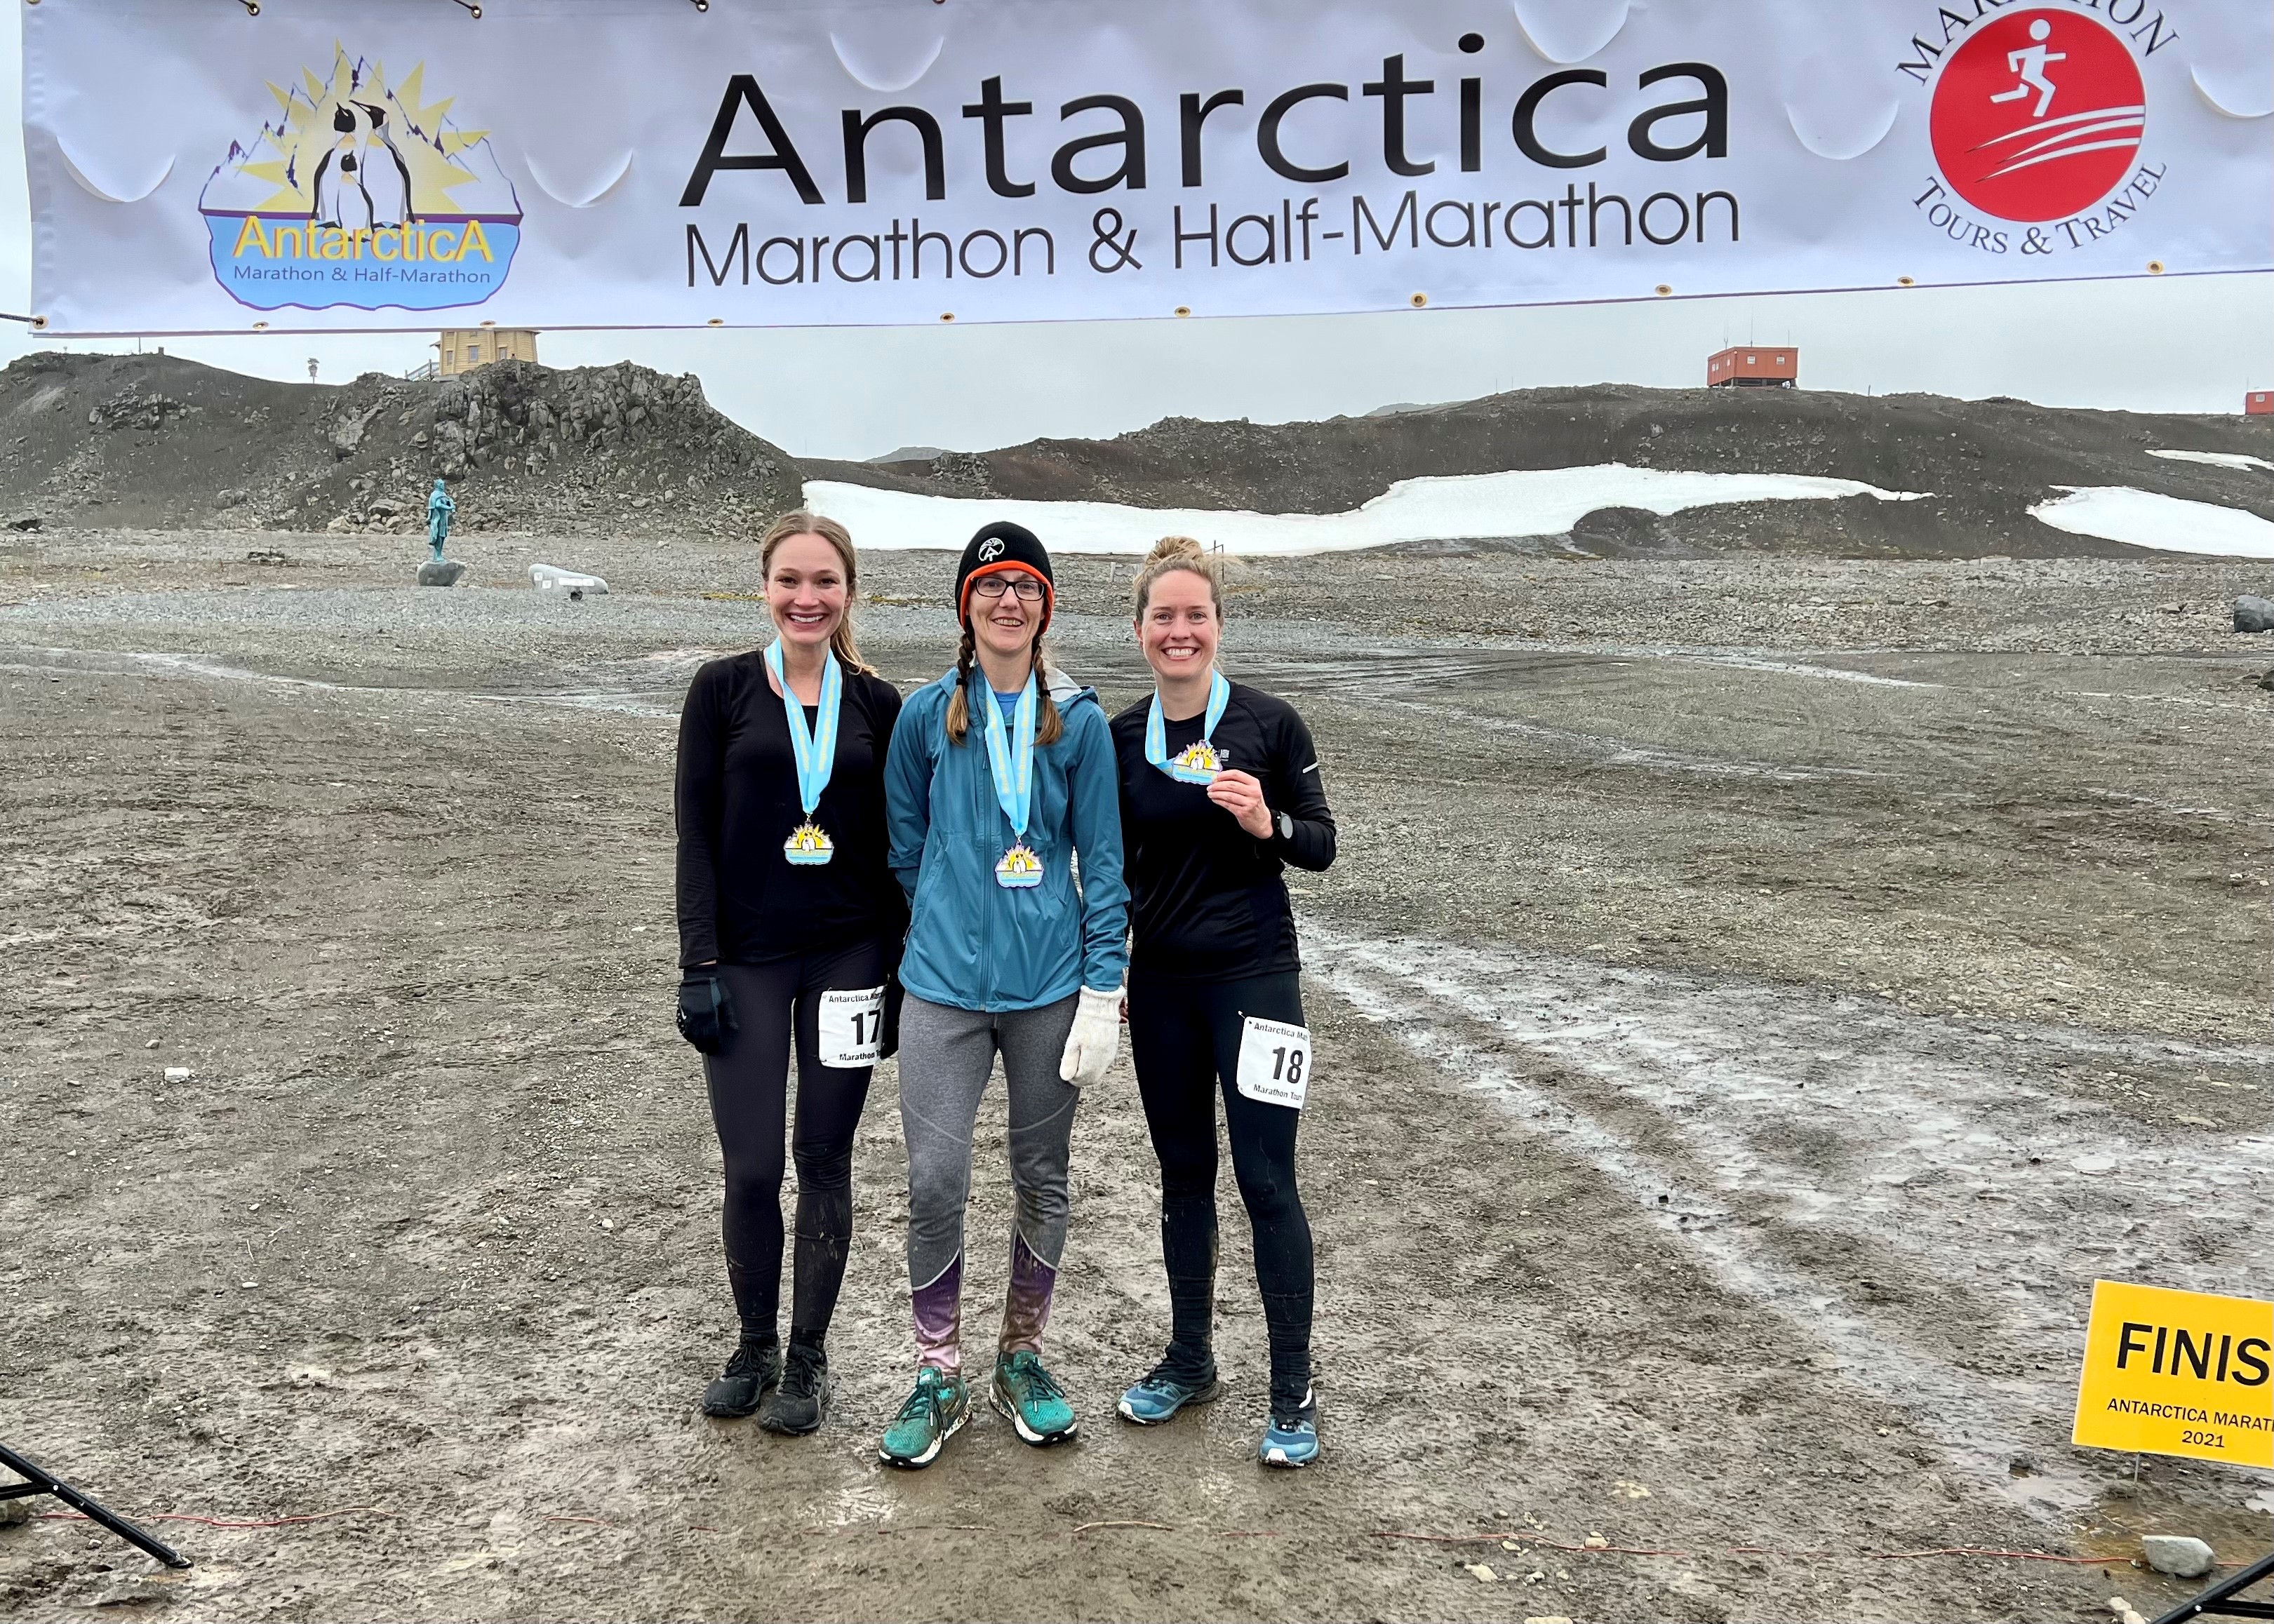 Runners Experience Antarctica Marathon®️ & Half Marathon after Two Year Wait